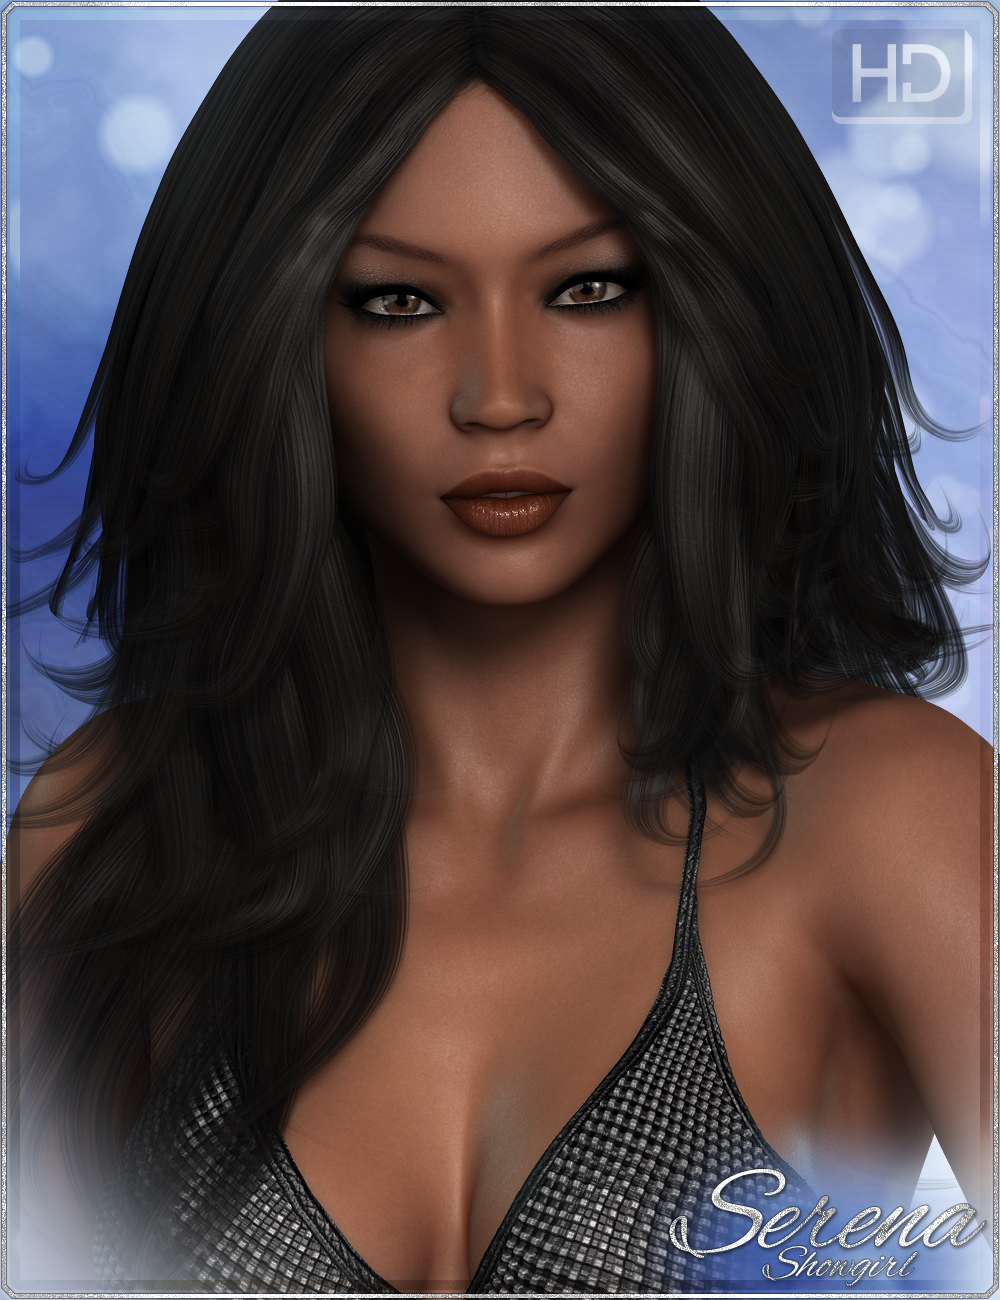 FWSA Serena HD by: Fred Winkler ArtSabby, 3D Models by Daz 3D